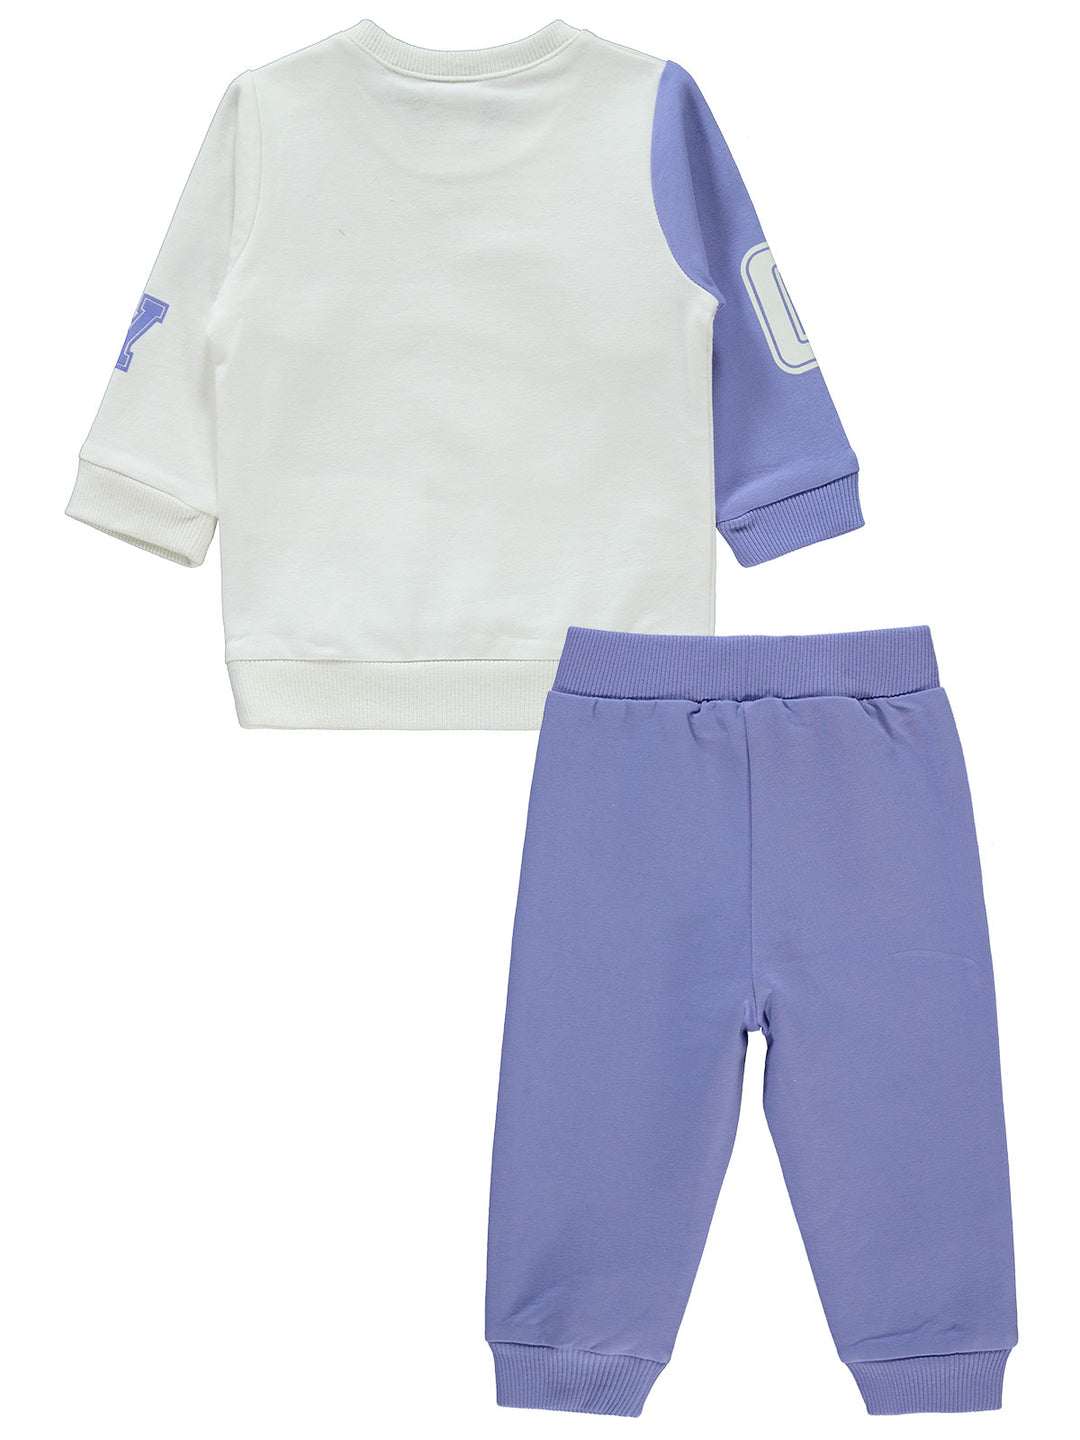 Civil Baby Pajama Suit Cotton L/S 2Pcs #E406 (W-22)